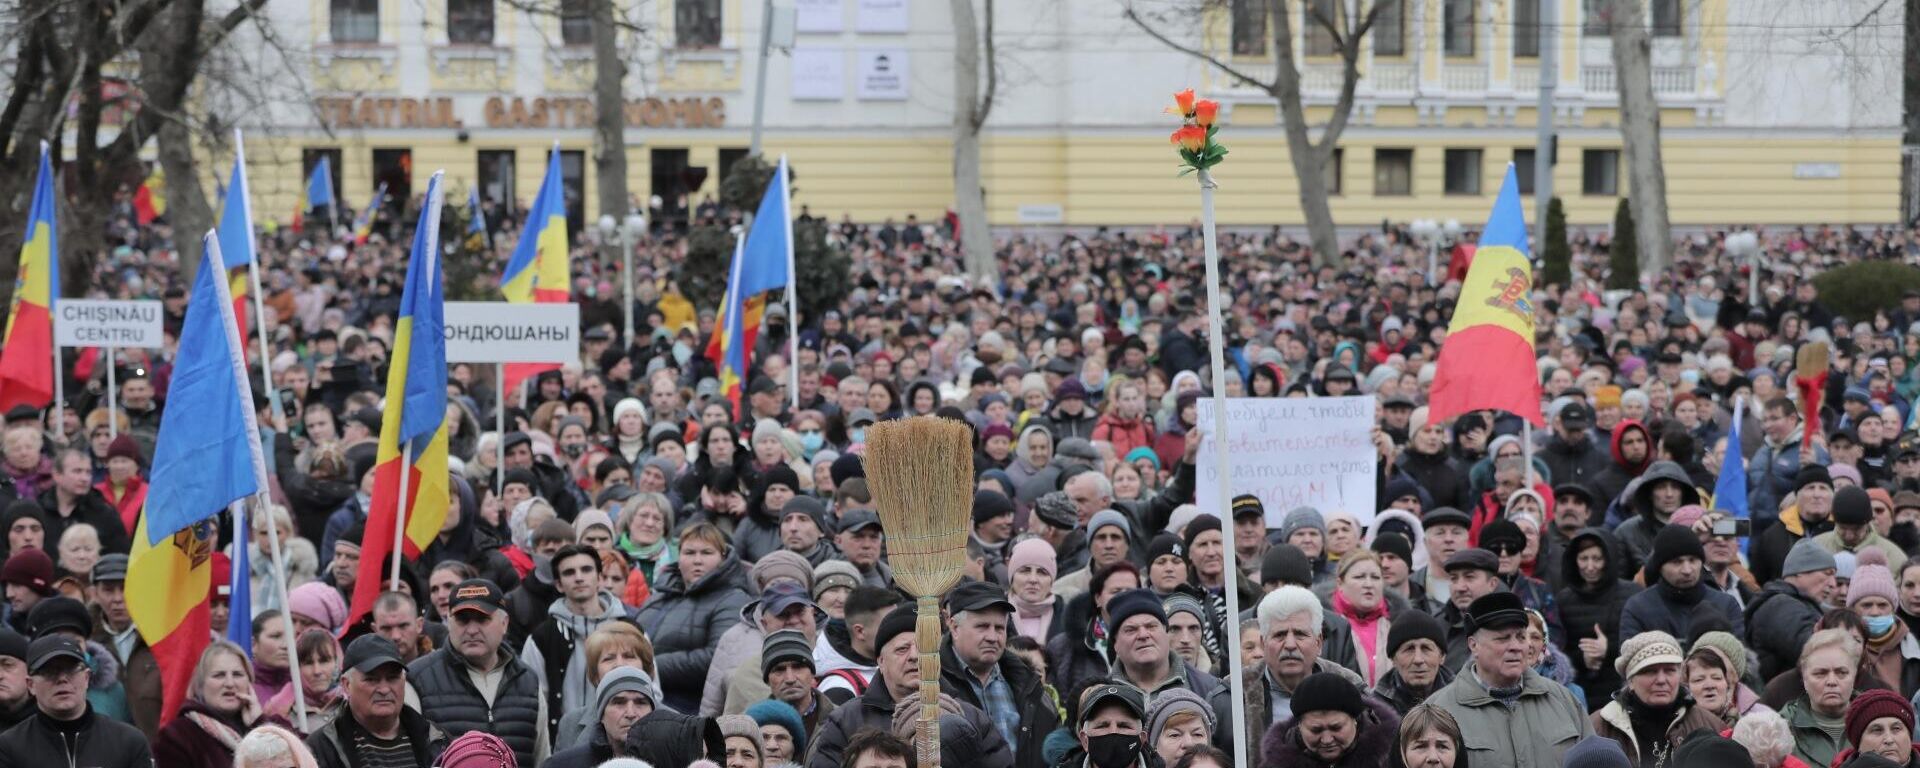 Las protestas contra el nuevo Gobierno en Chisináu, Moldavia - Sputnik Mundo, 1920, 19.02.2023